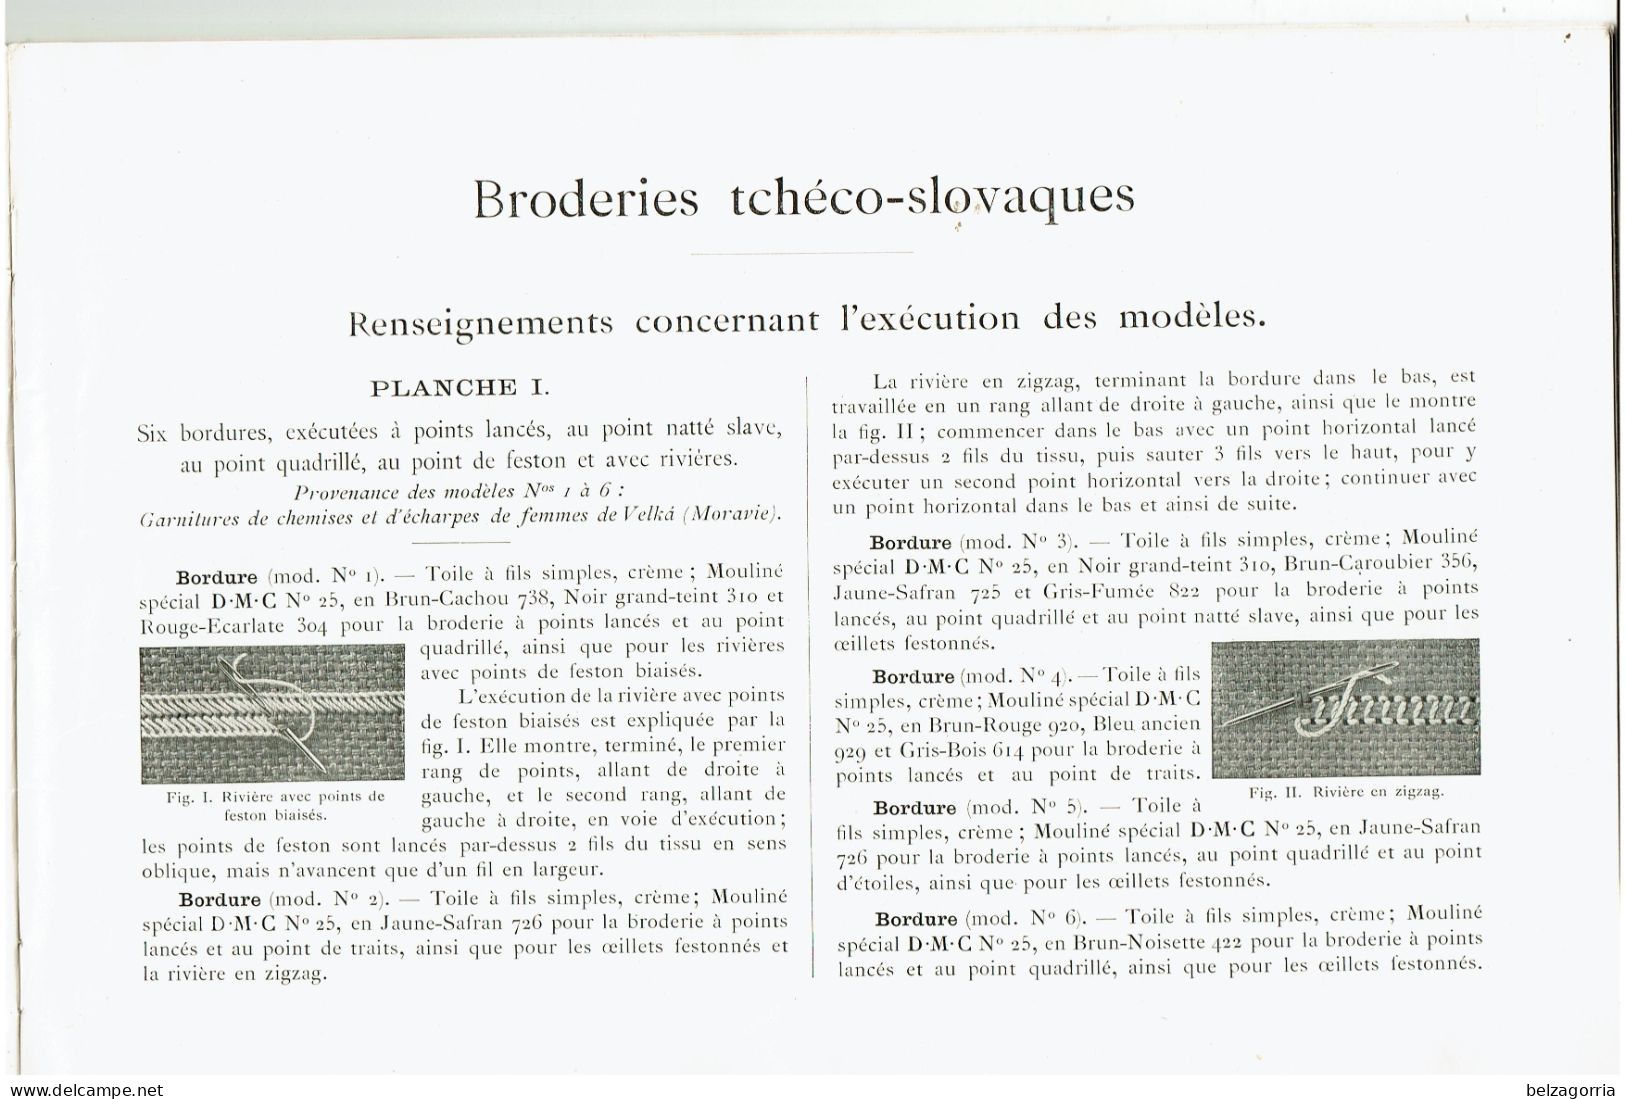 ALBUM BRODERIES TCHECO-SLOVAQUES - POINT DE CROIX - D.M.C. BIBLIOTHEQUE - VOIR SCANS - Punto Croce